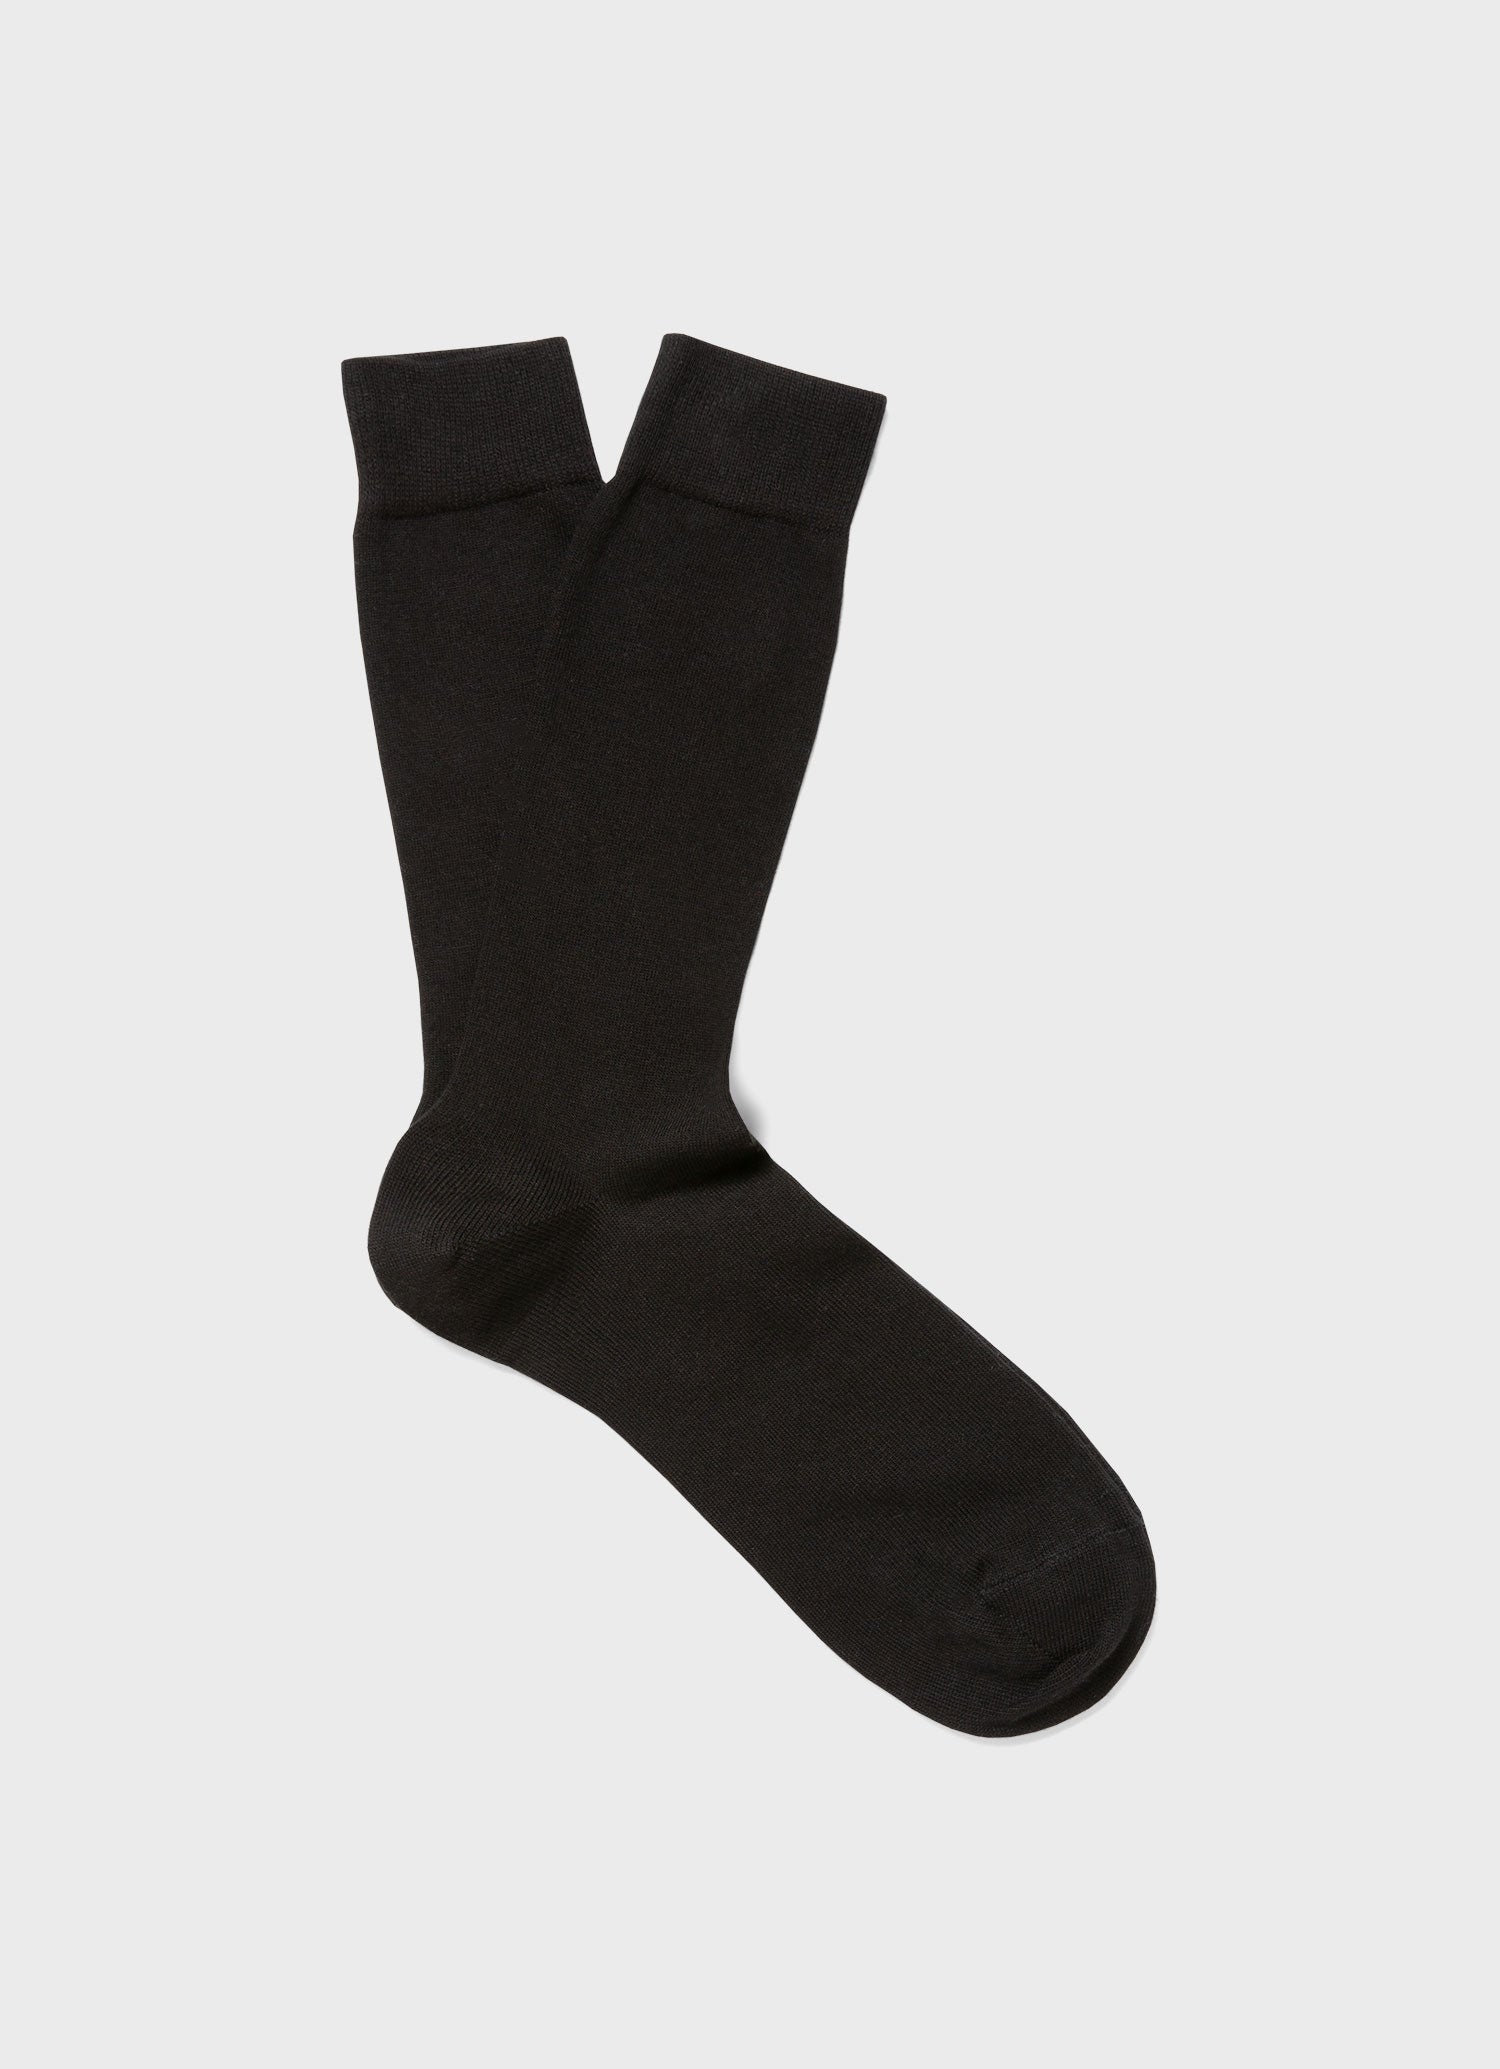 Long Staple Cotton Socks - 1